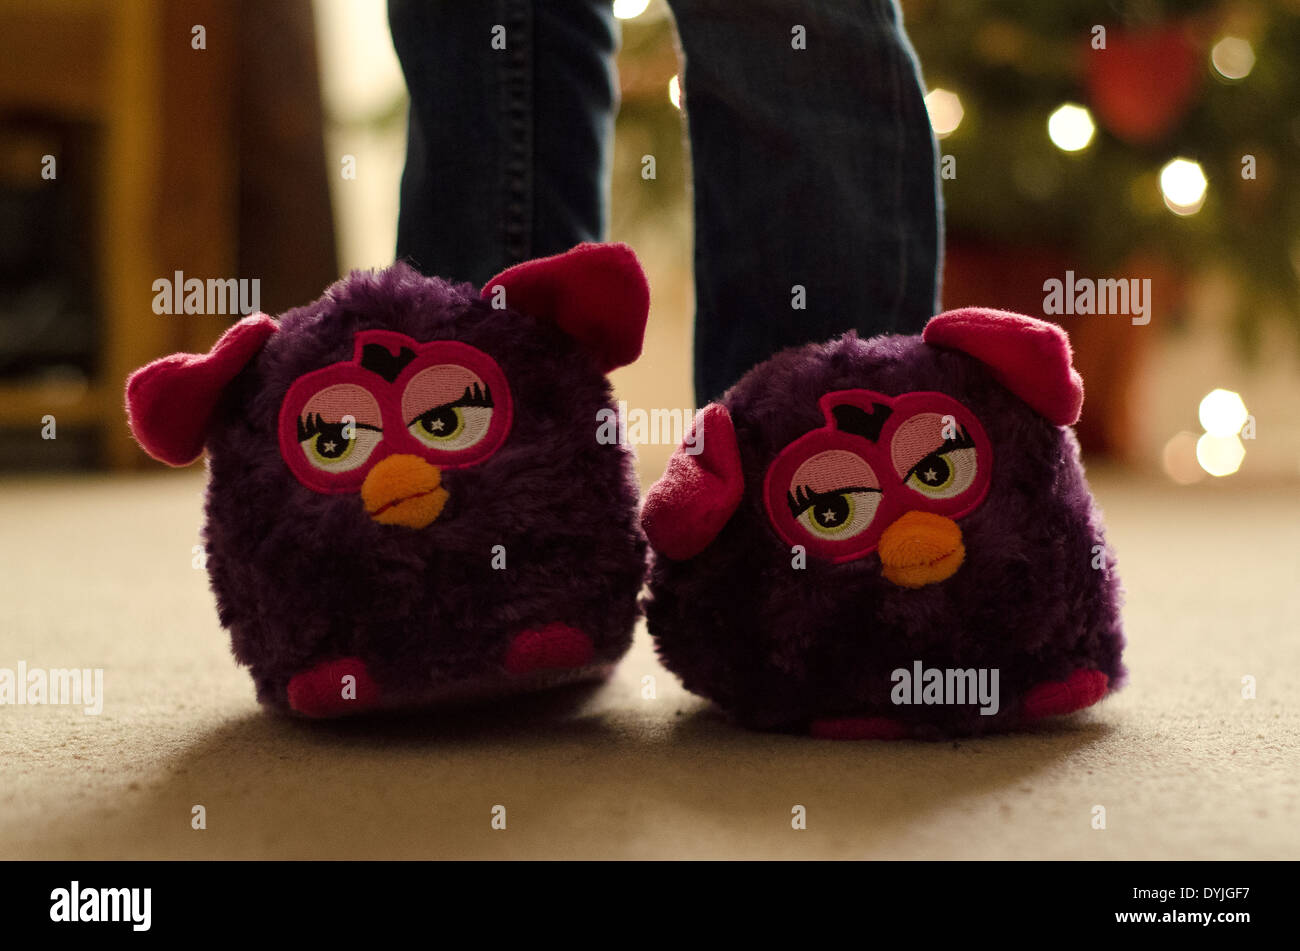 Stompeez Furby violette chaussons. Banque D'Images